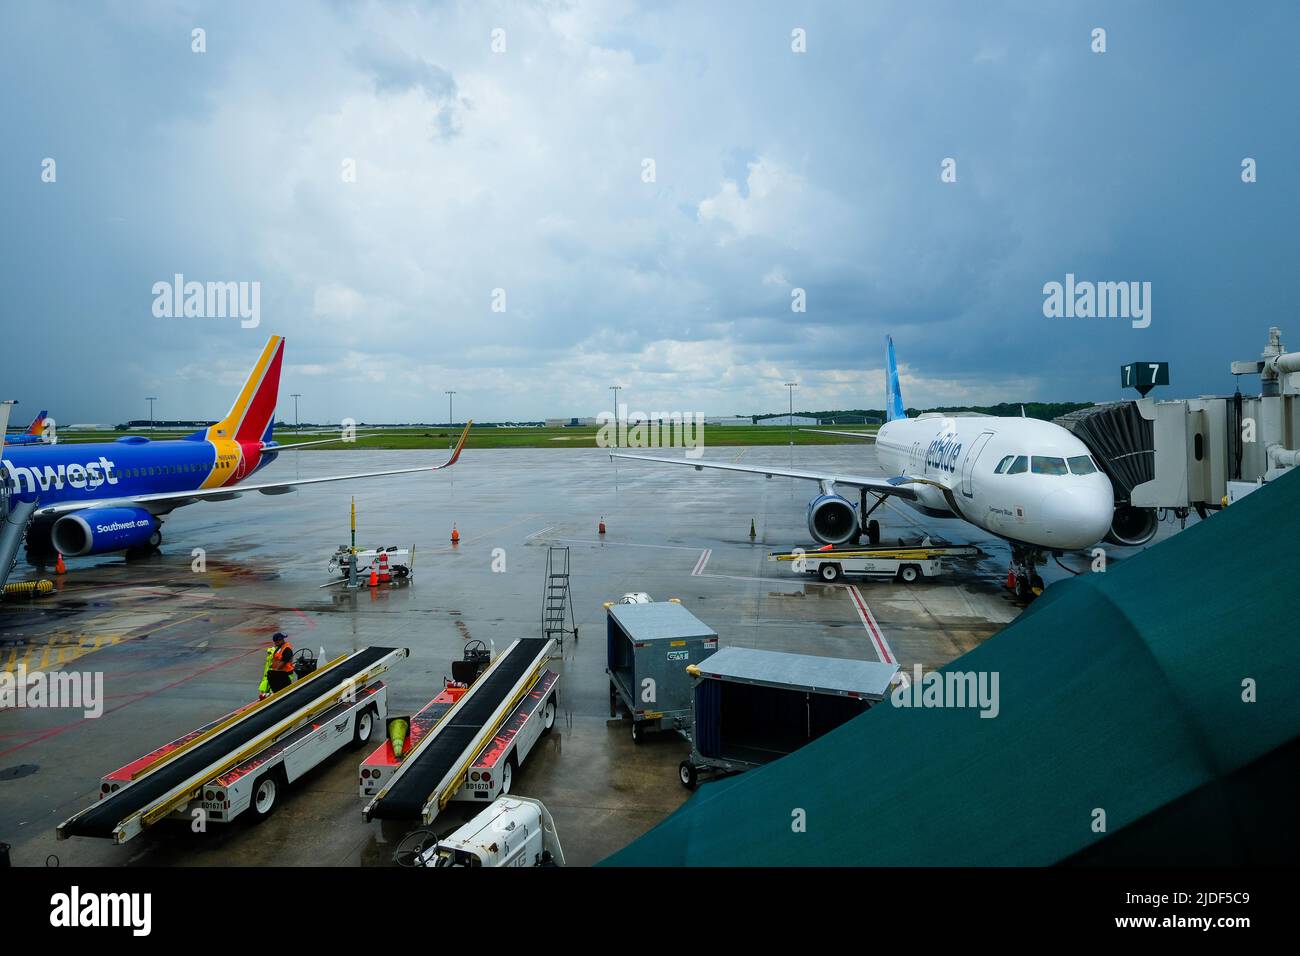 Images de South West et JetBlue Airlines. Retards de vol actuels autour des États-Unis. Équipe au sol gérant les vols et les convoyeurs à bagages. Banque D'Images